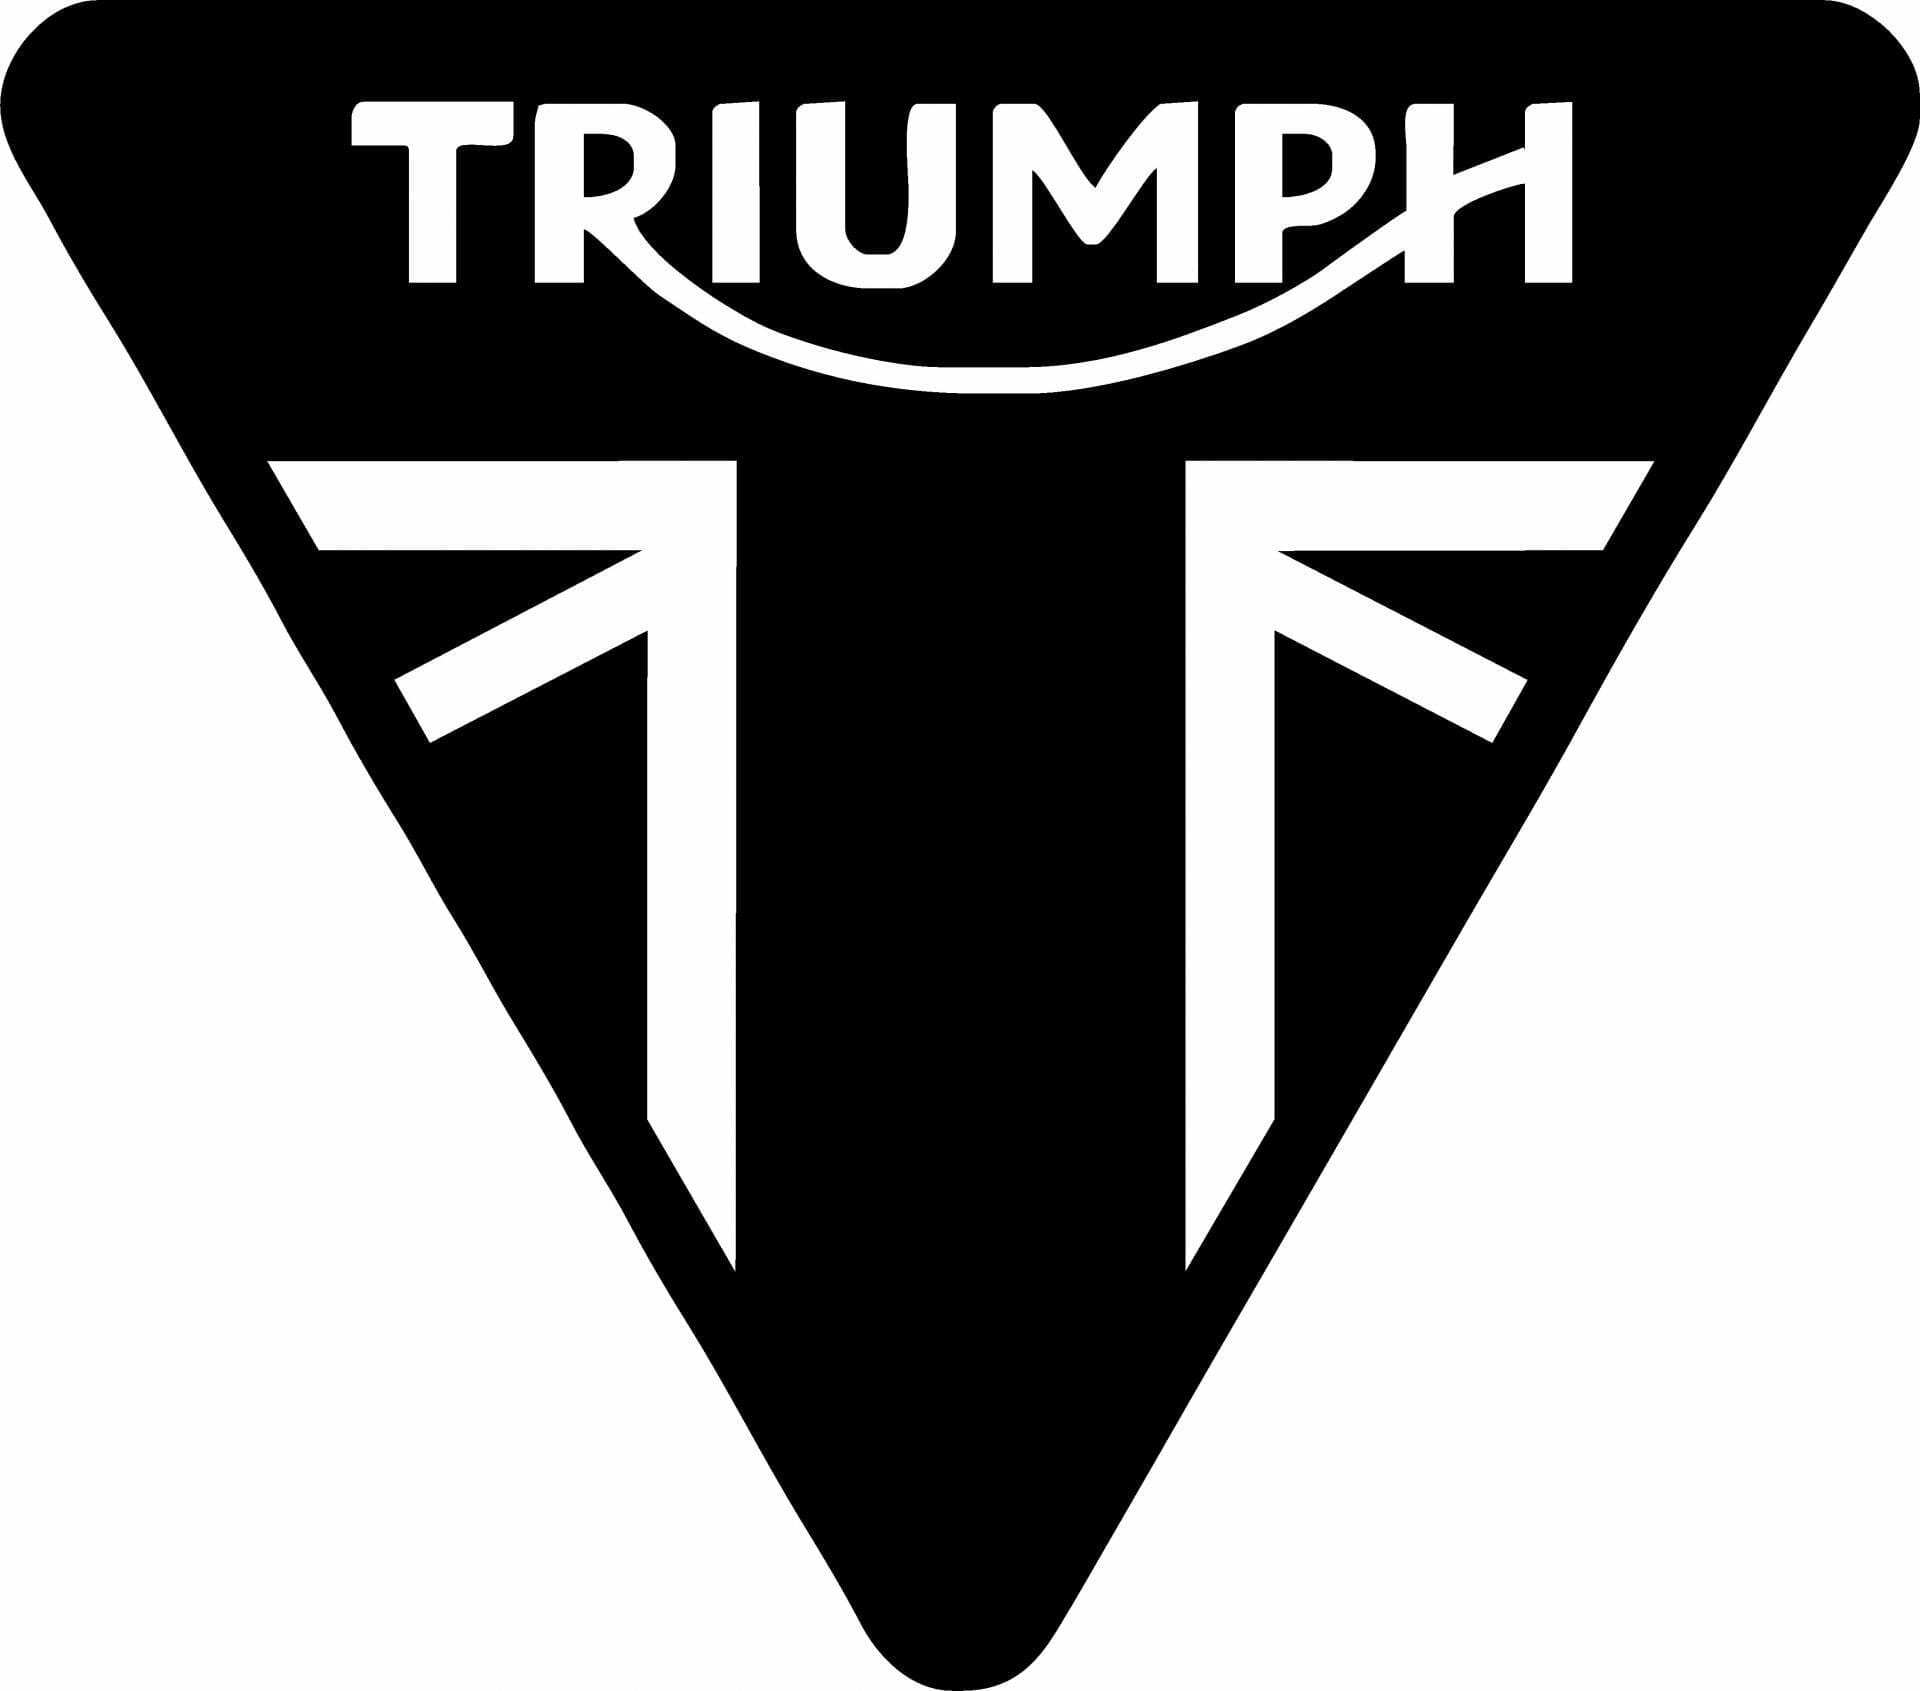 Aktualisierung der Triumph Bonneville Familie
- auch in der MOTORRAD NACHRICHTEN APP